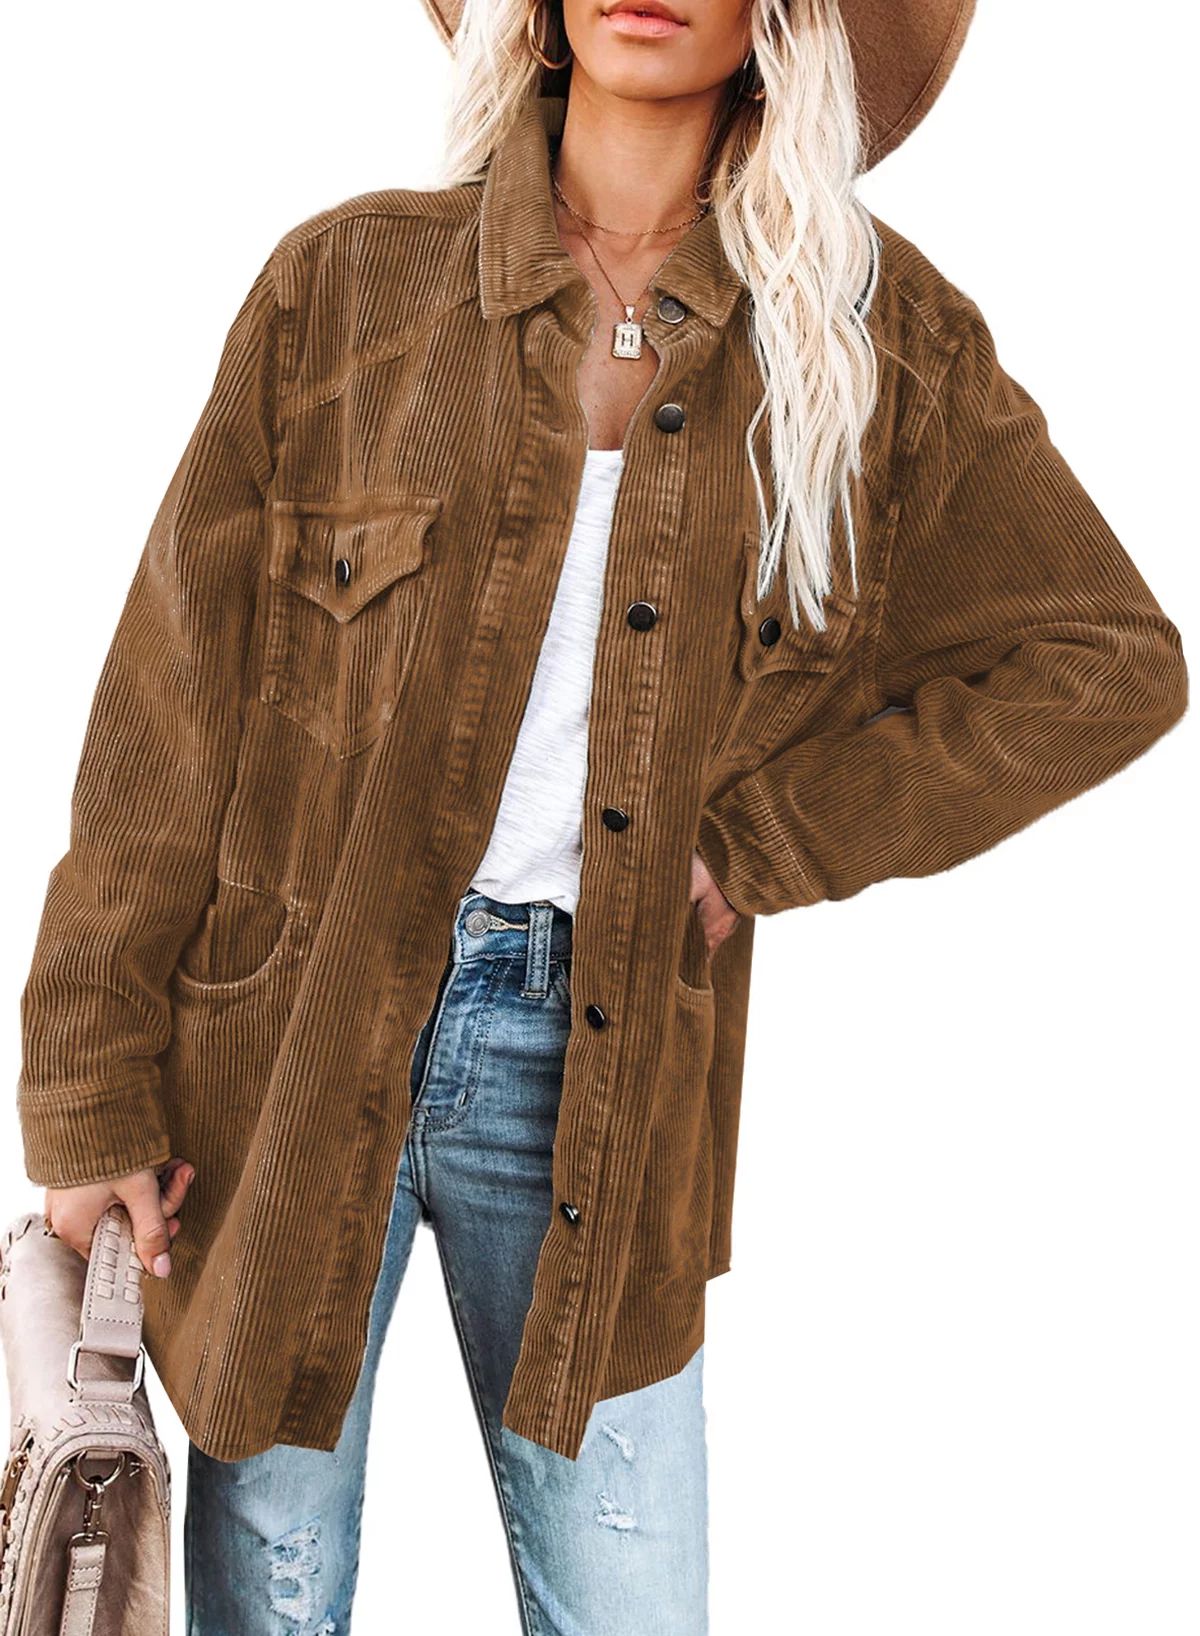 SHEWIN Women's Corduroy Jackets Button Down Shacket Coats Boyfriend Shirts Long Sleeve Casual Jac... | Walmart (US)